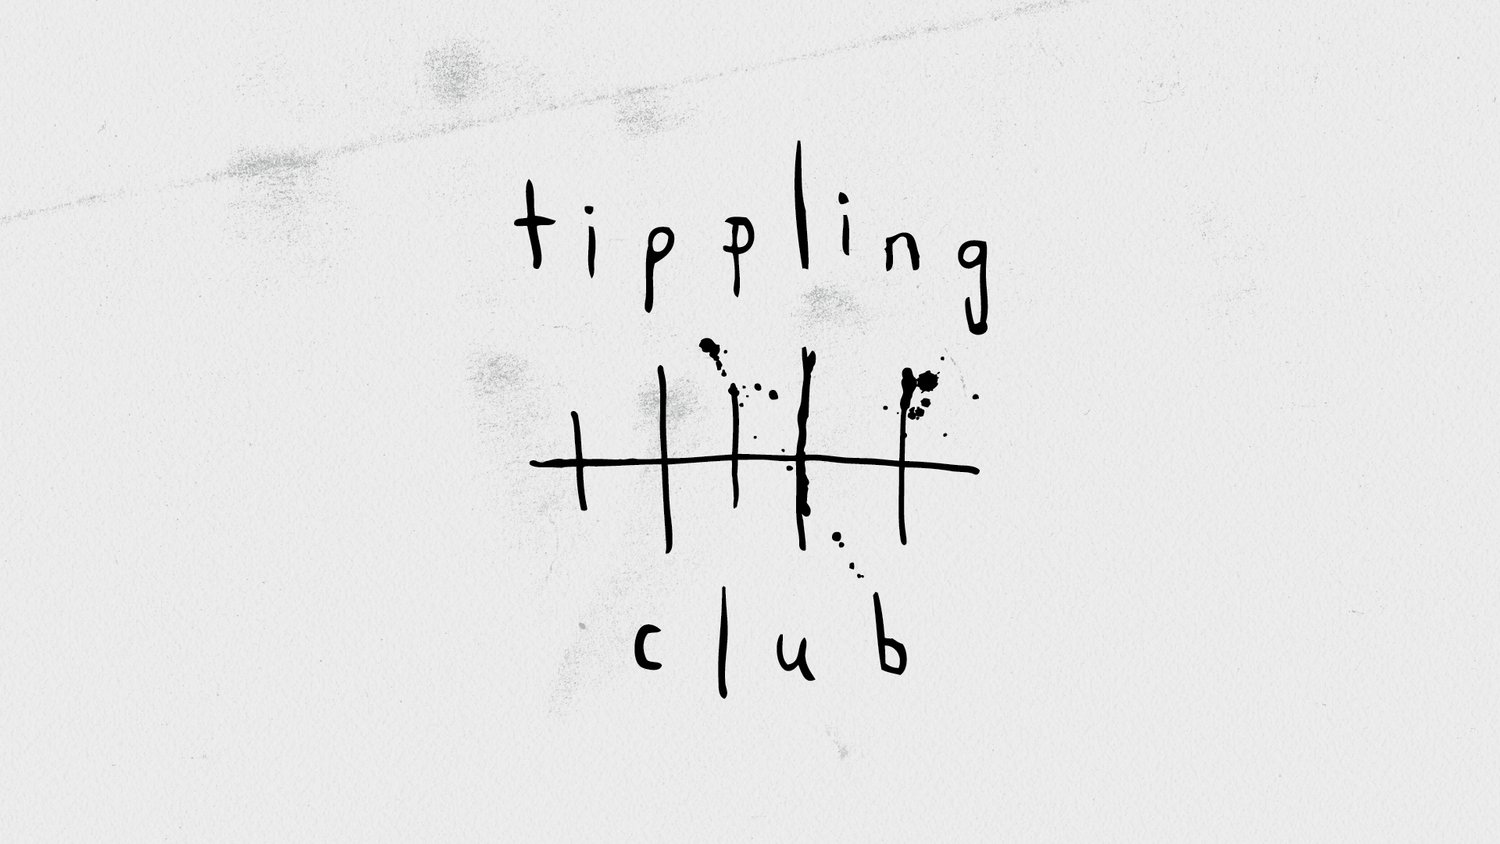 www.tipplingclub.com